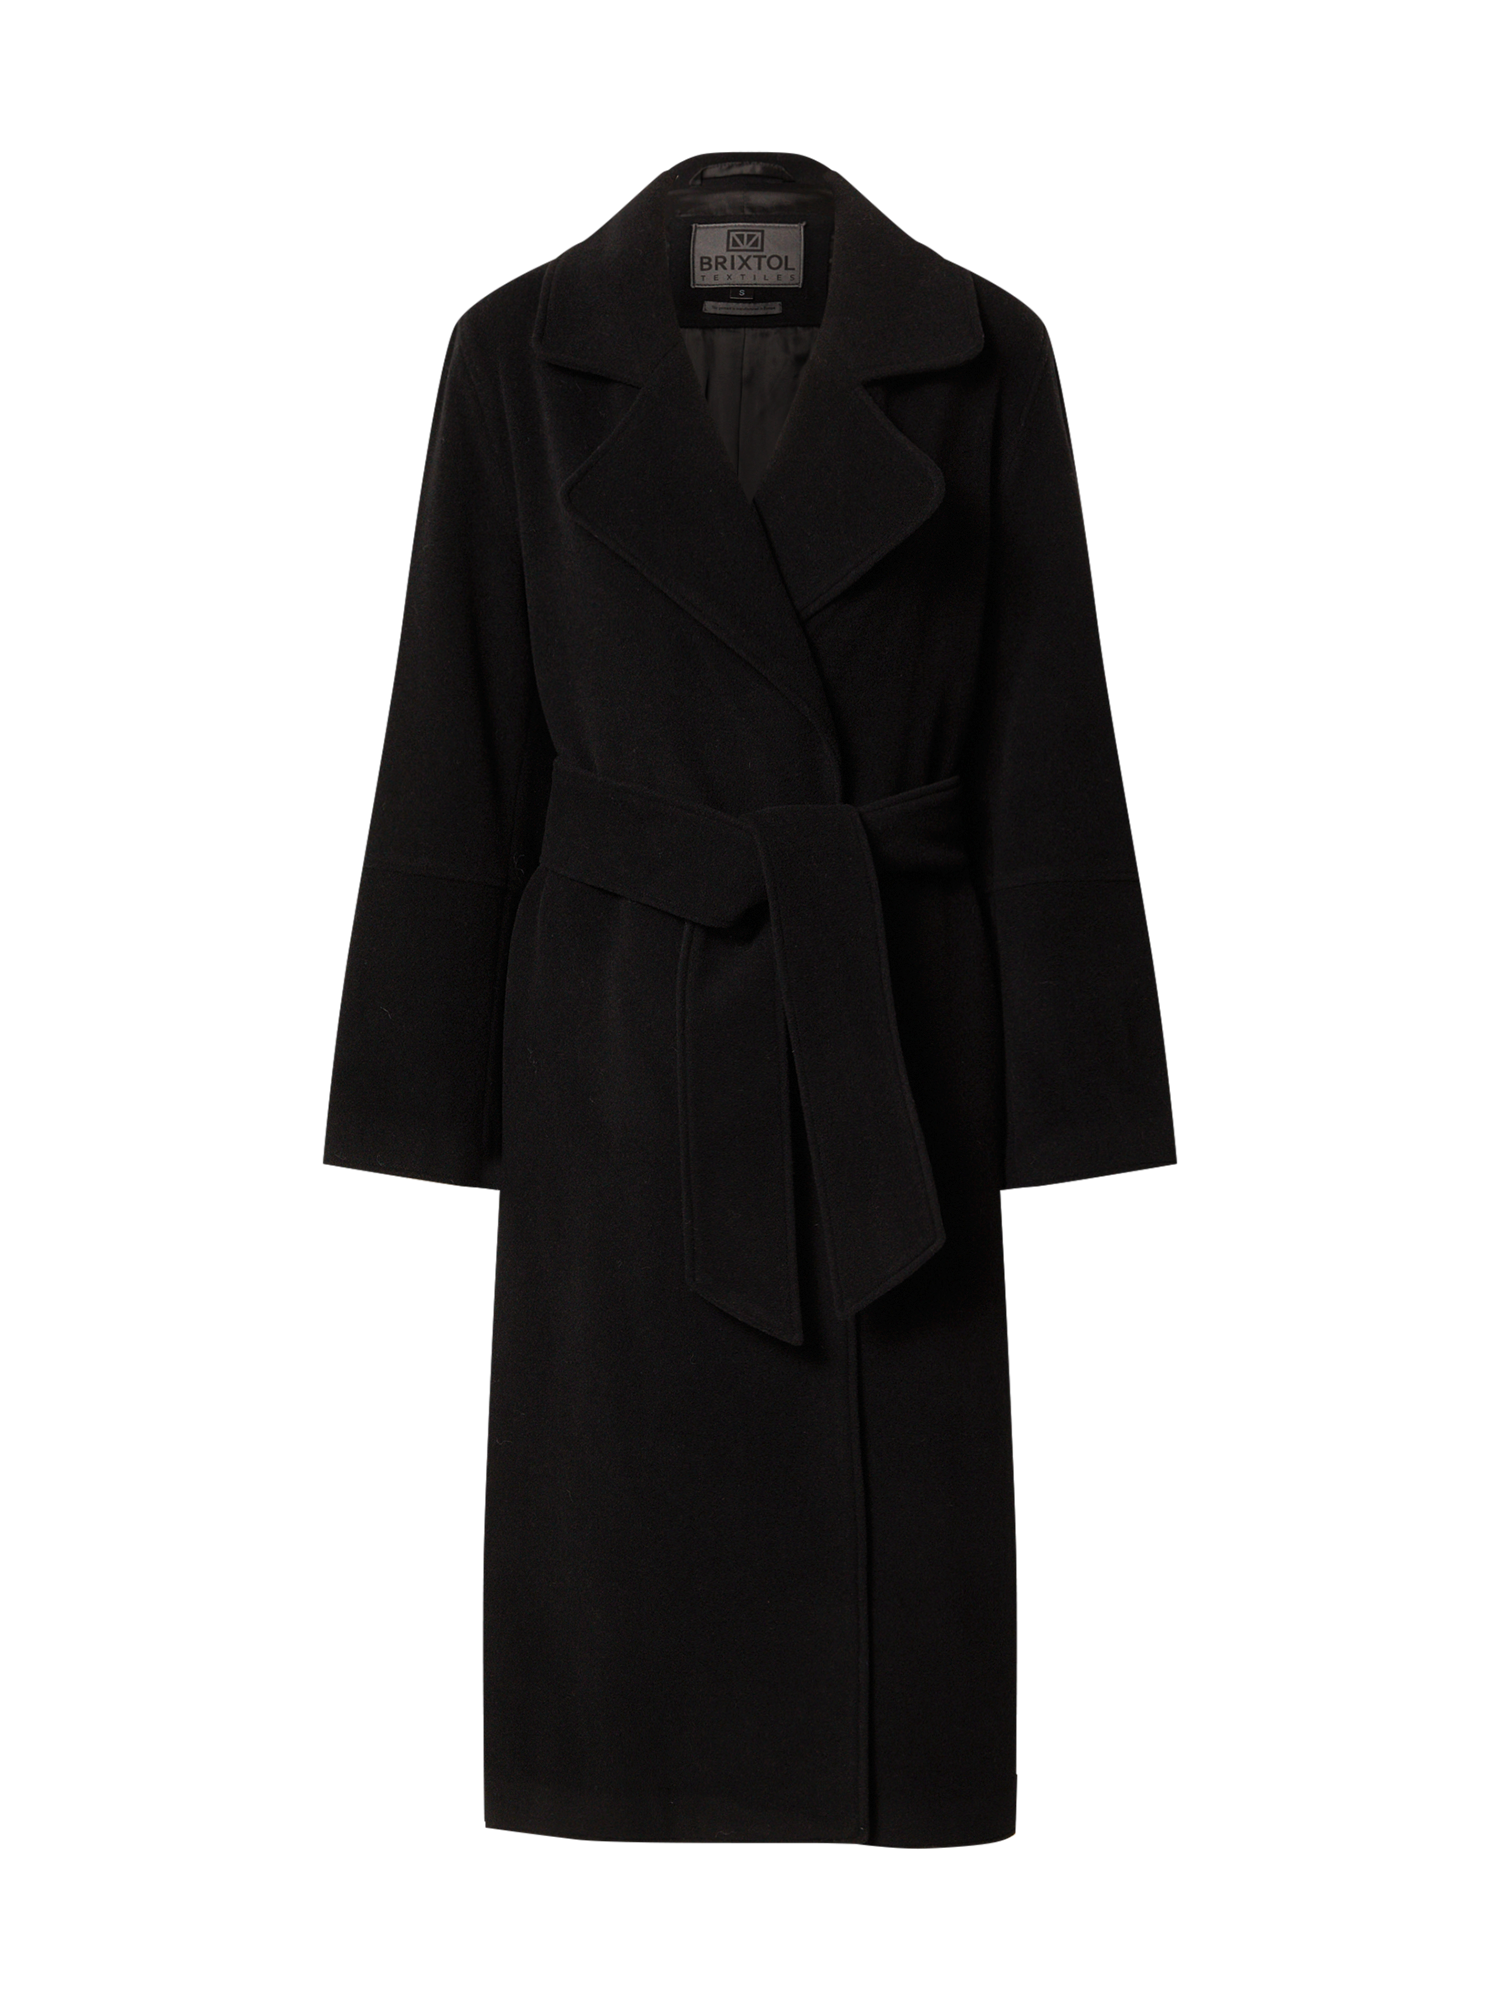 Kobiety 4ASw0 Brixtol Textiles Płaszcz przejściowy Mika w kolorze Czarnym 